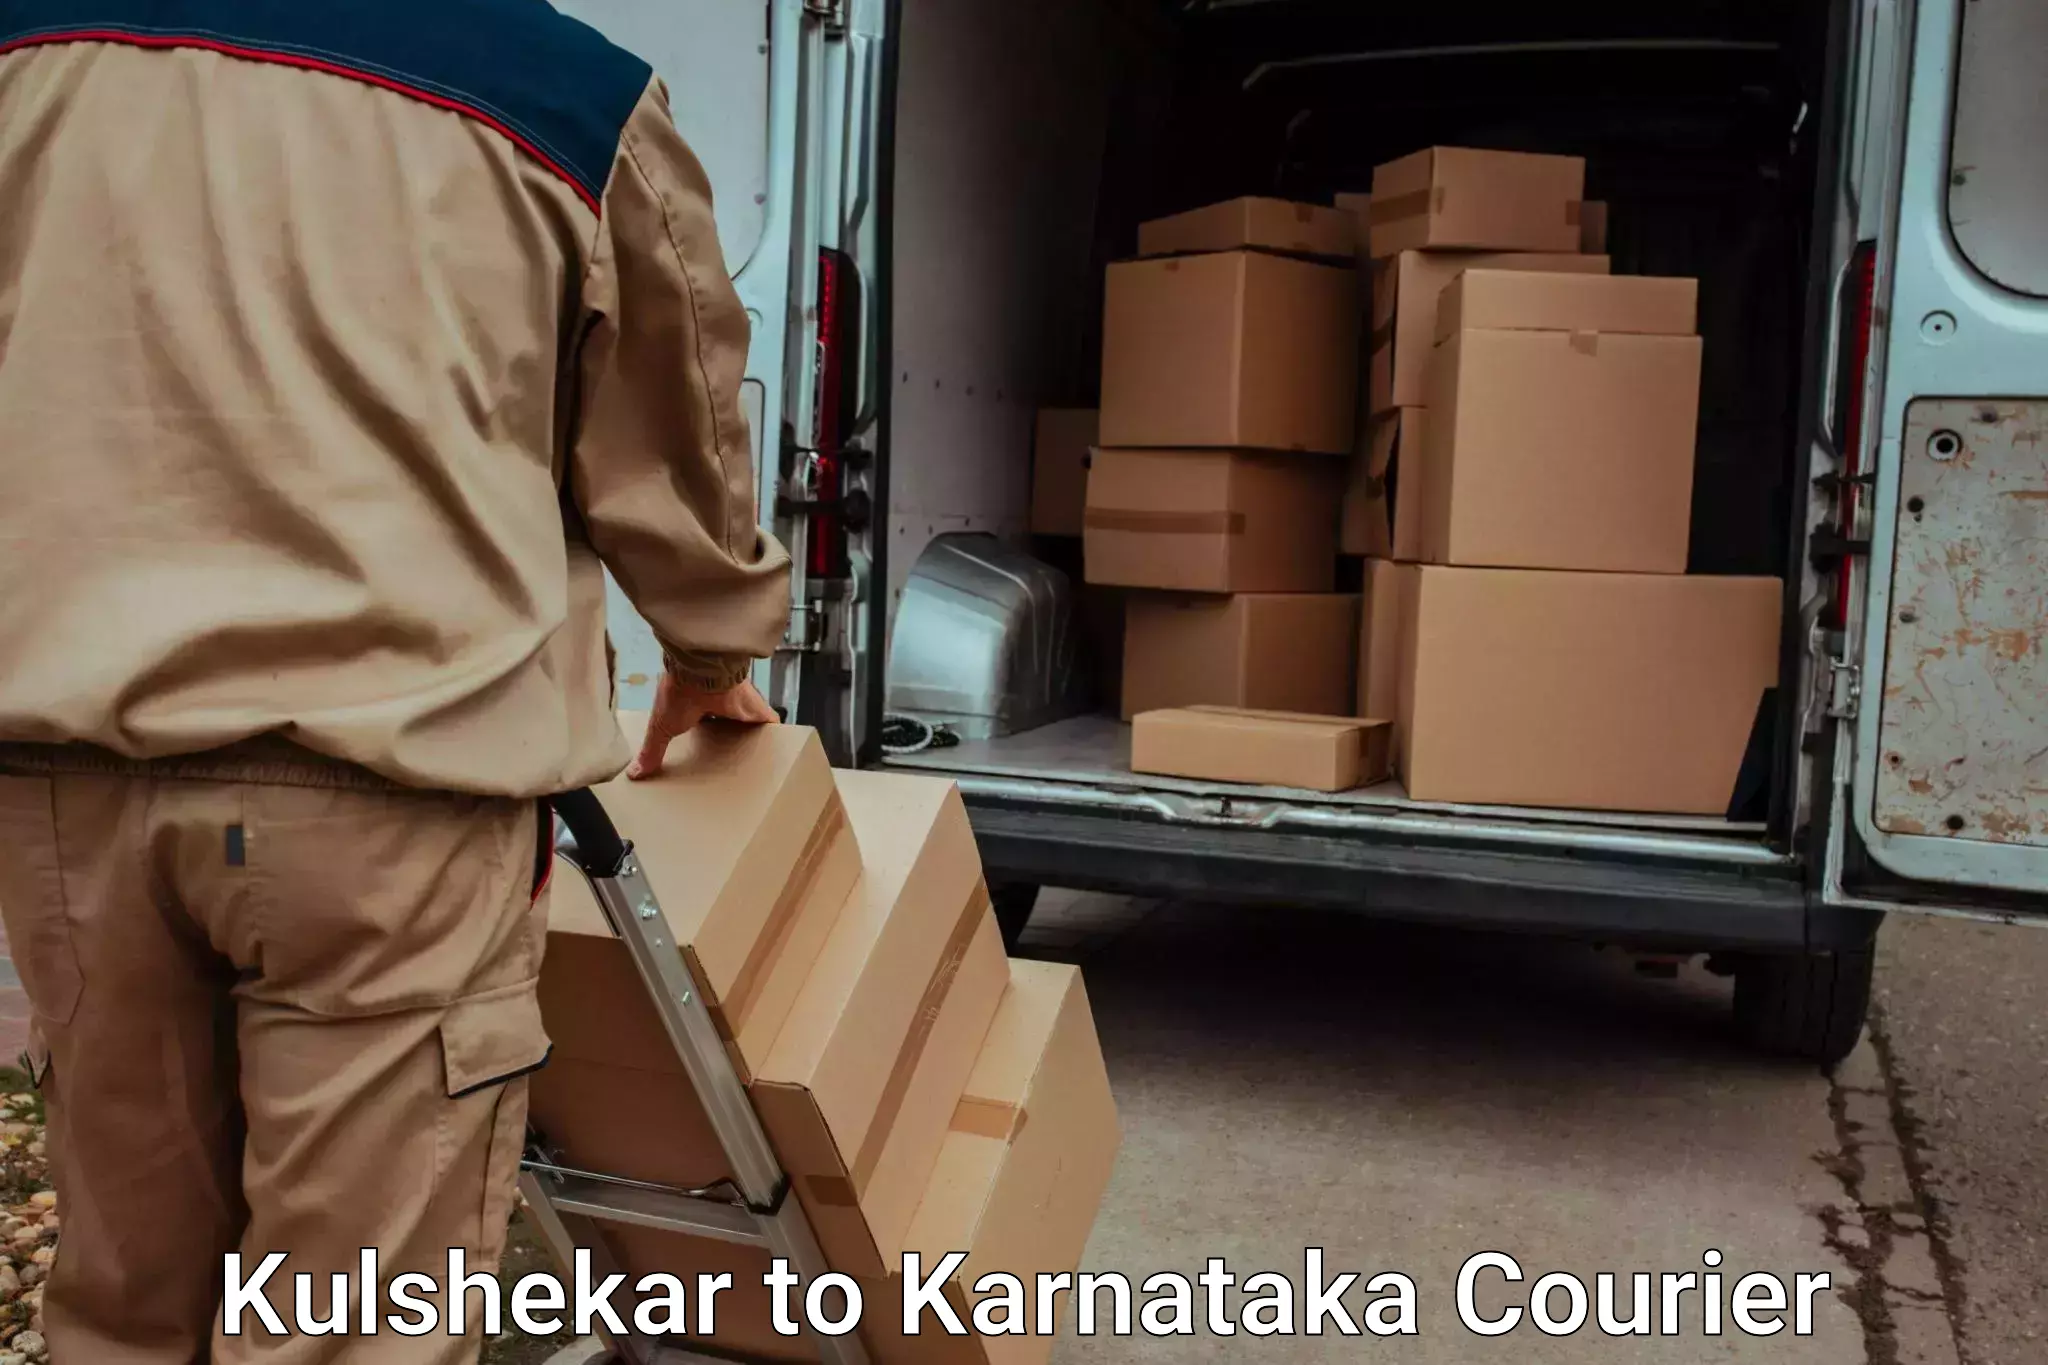 Furniture moving services in Kulshekar to Karnataka